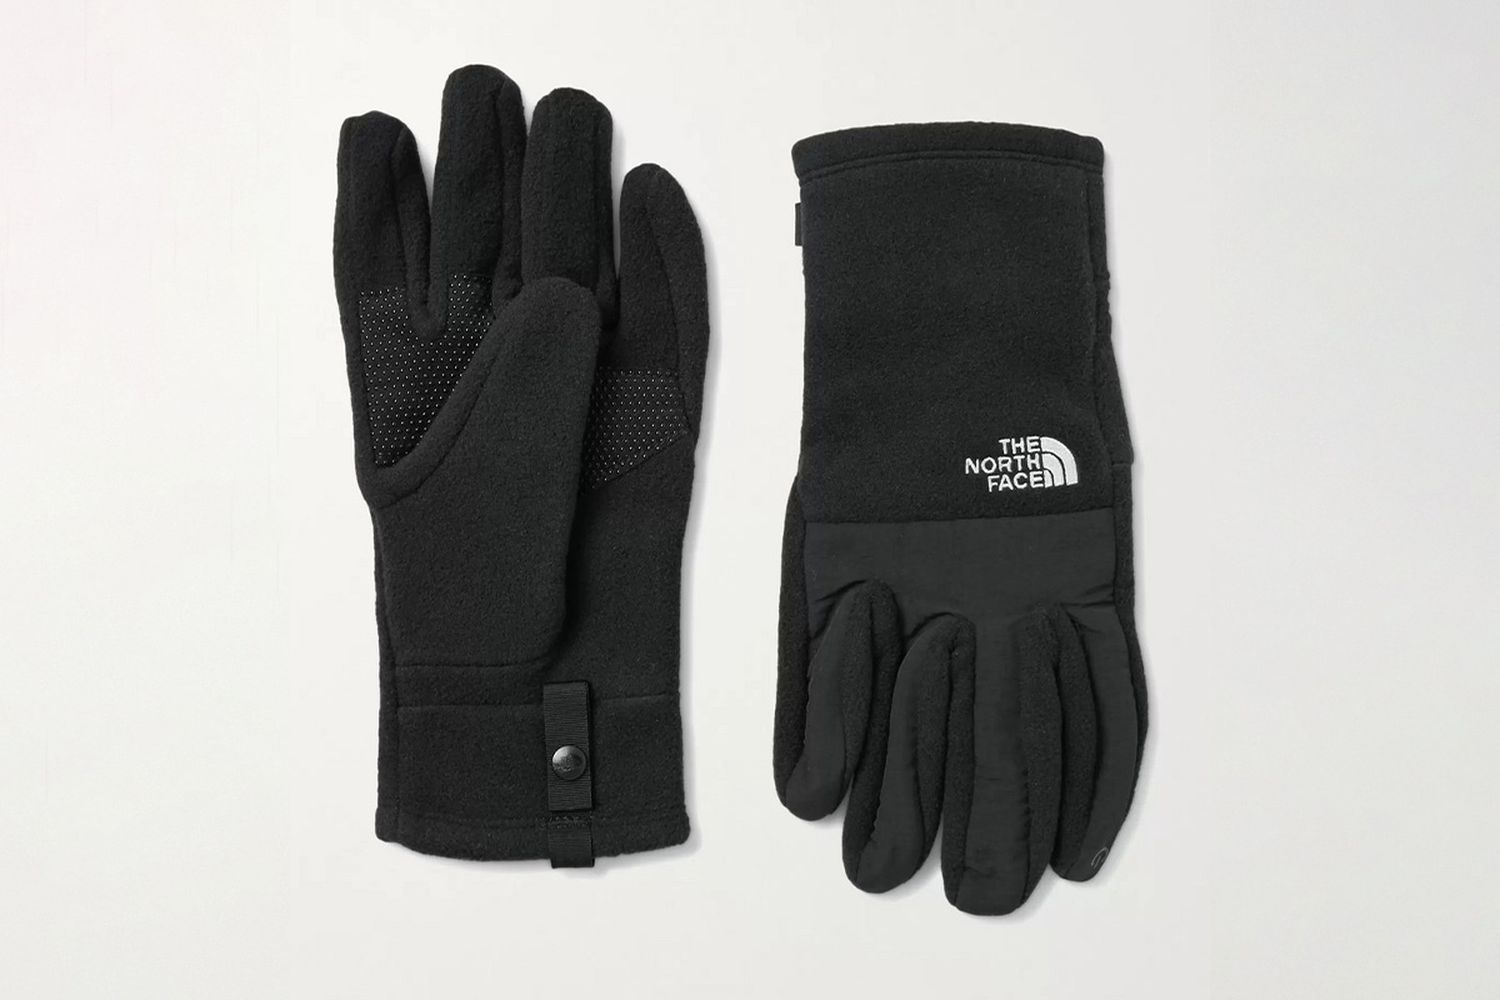 Denali Gloves